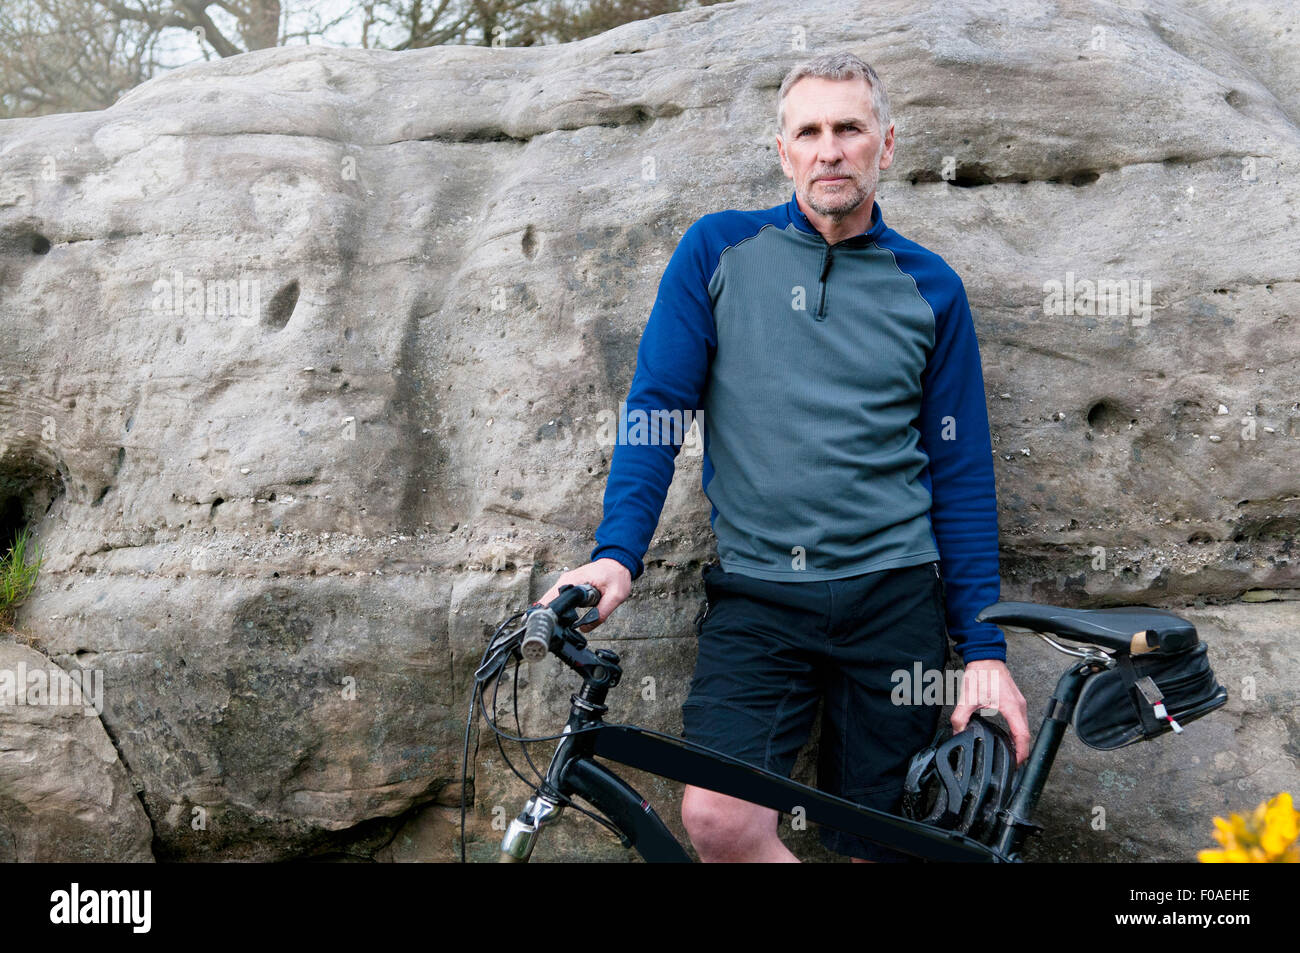 Portrait of male mountain biker on rock formation Stock Photo